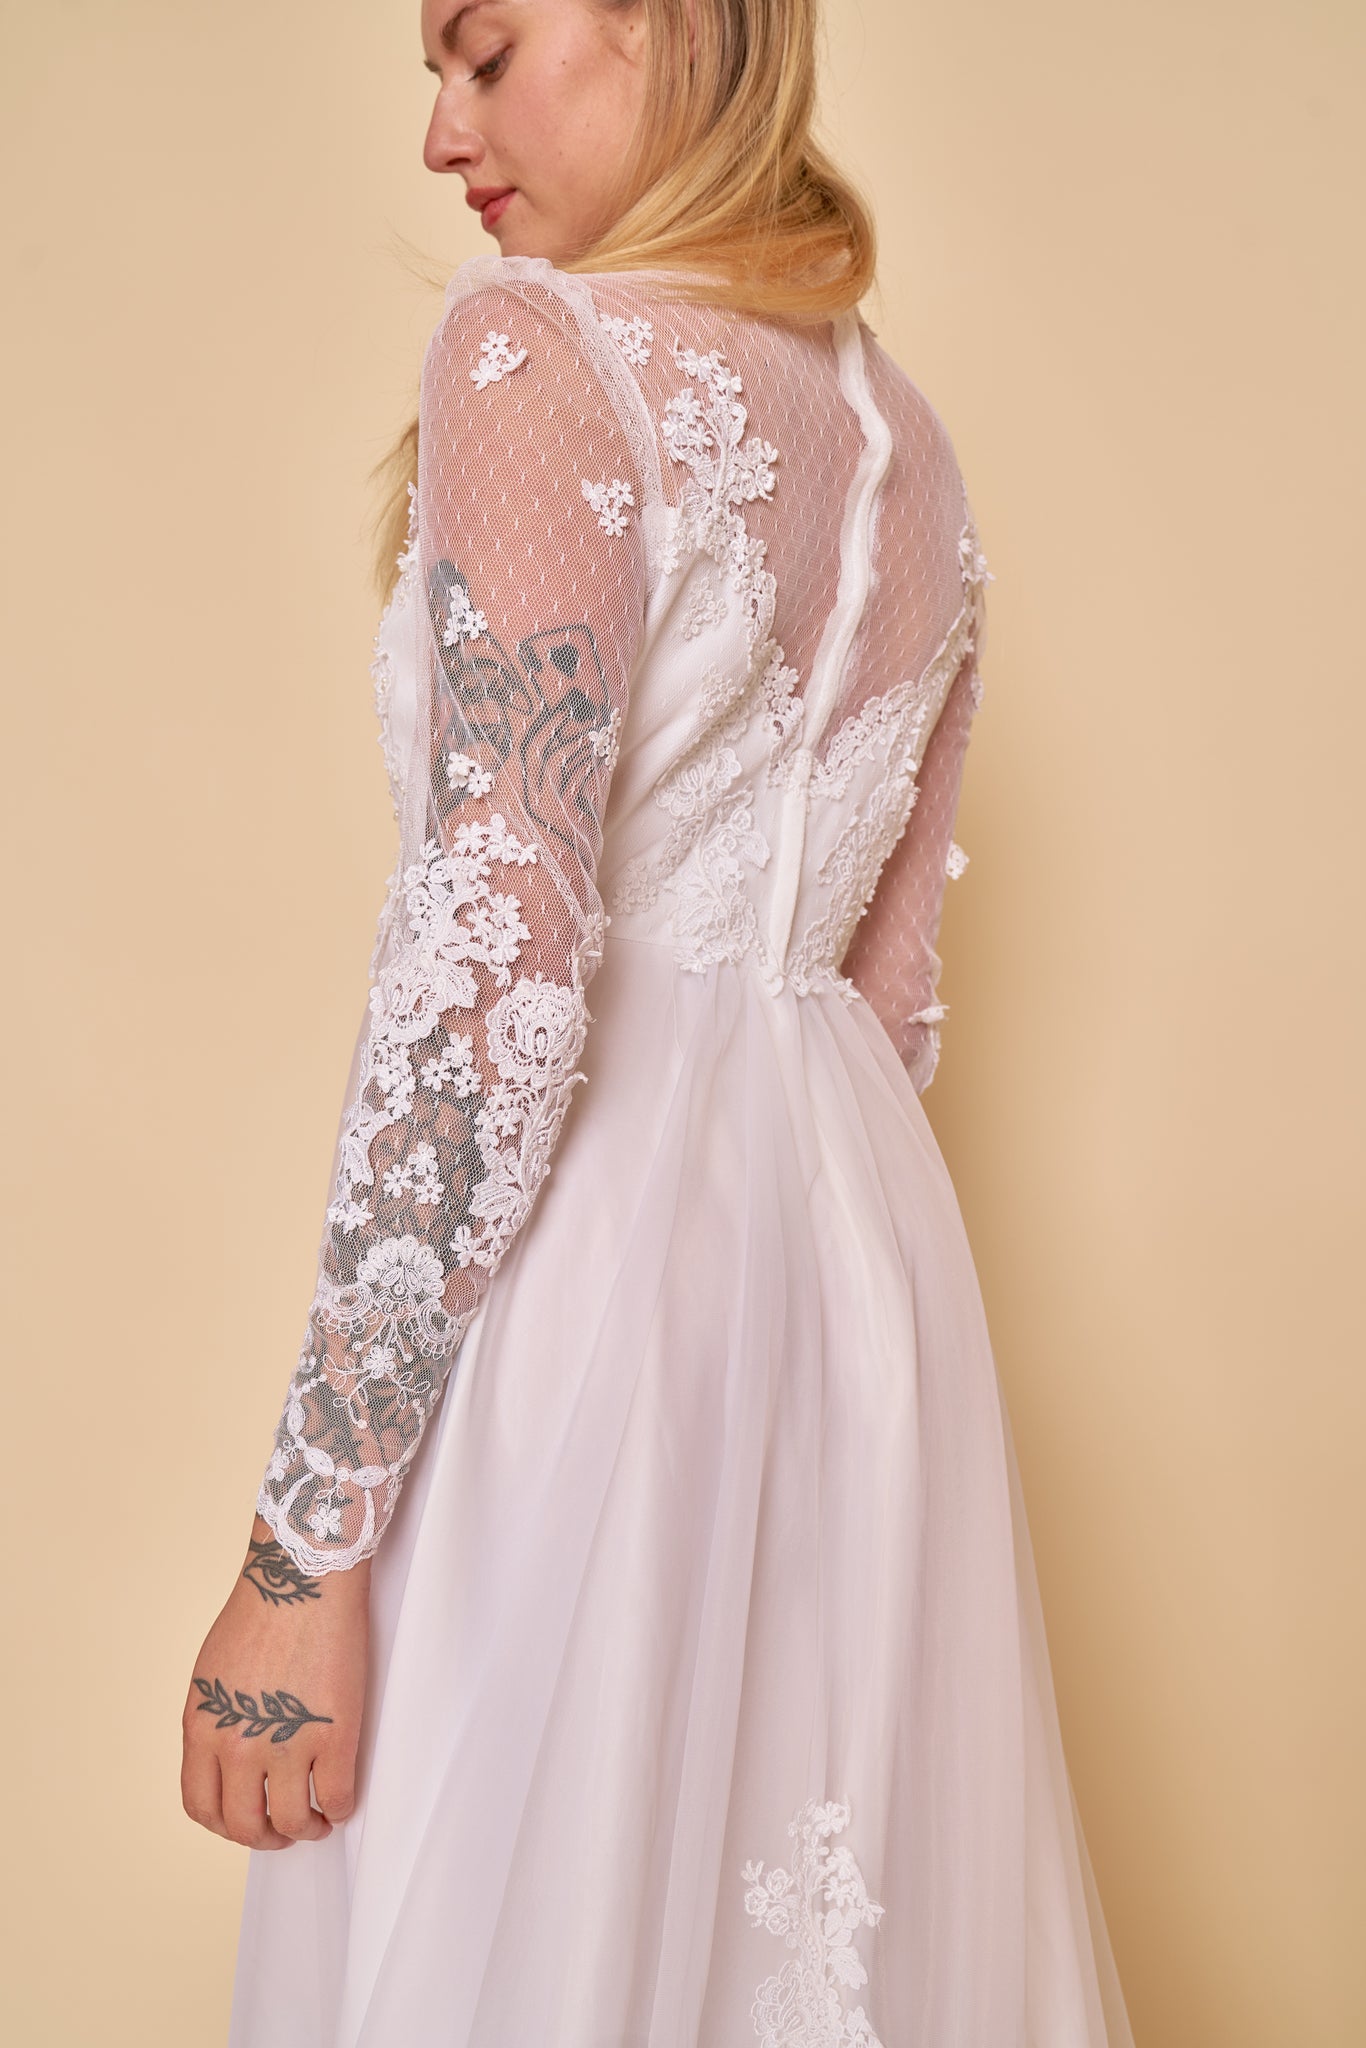 Savannah Lace Gown - M